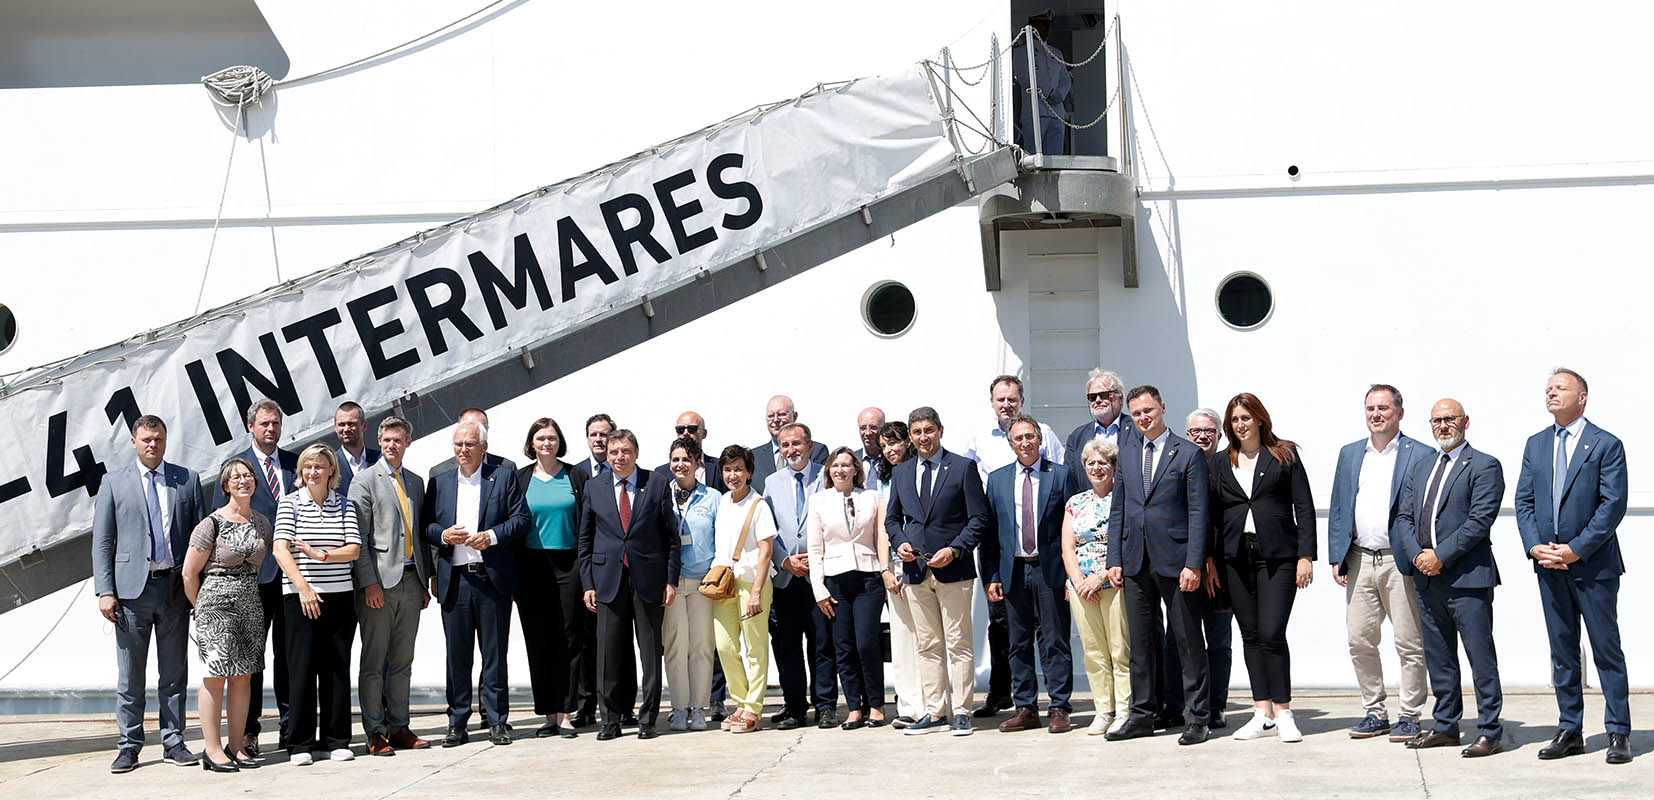 Ministros de Pesca europeos visitando el buque Intermares en Vigo